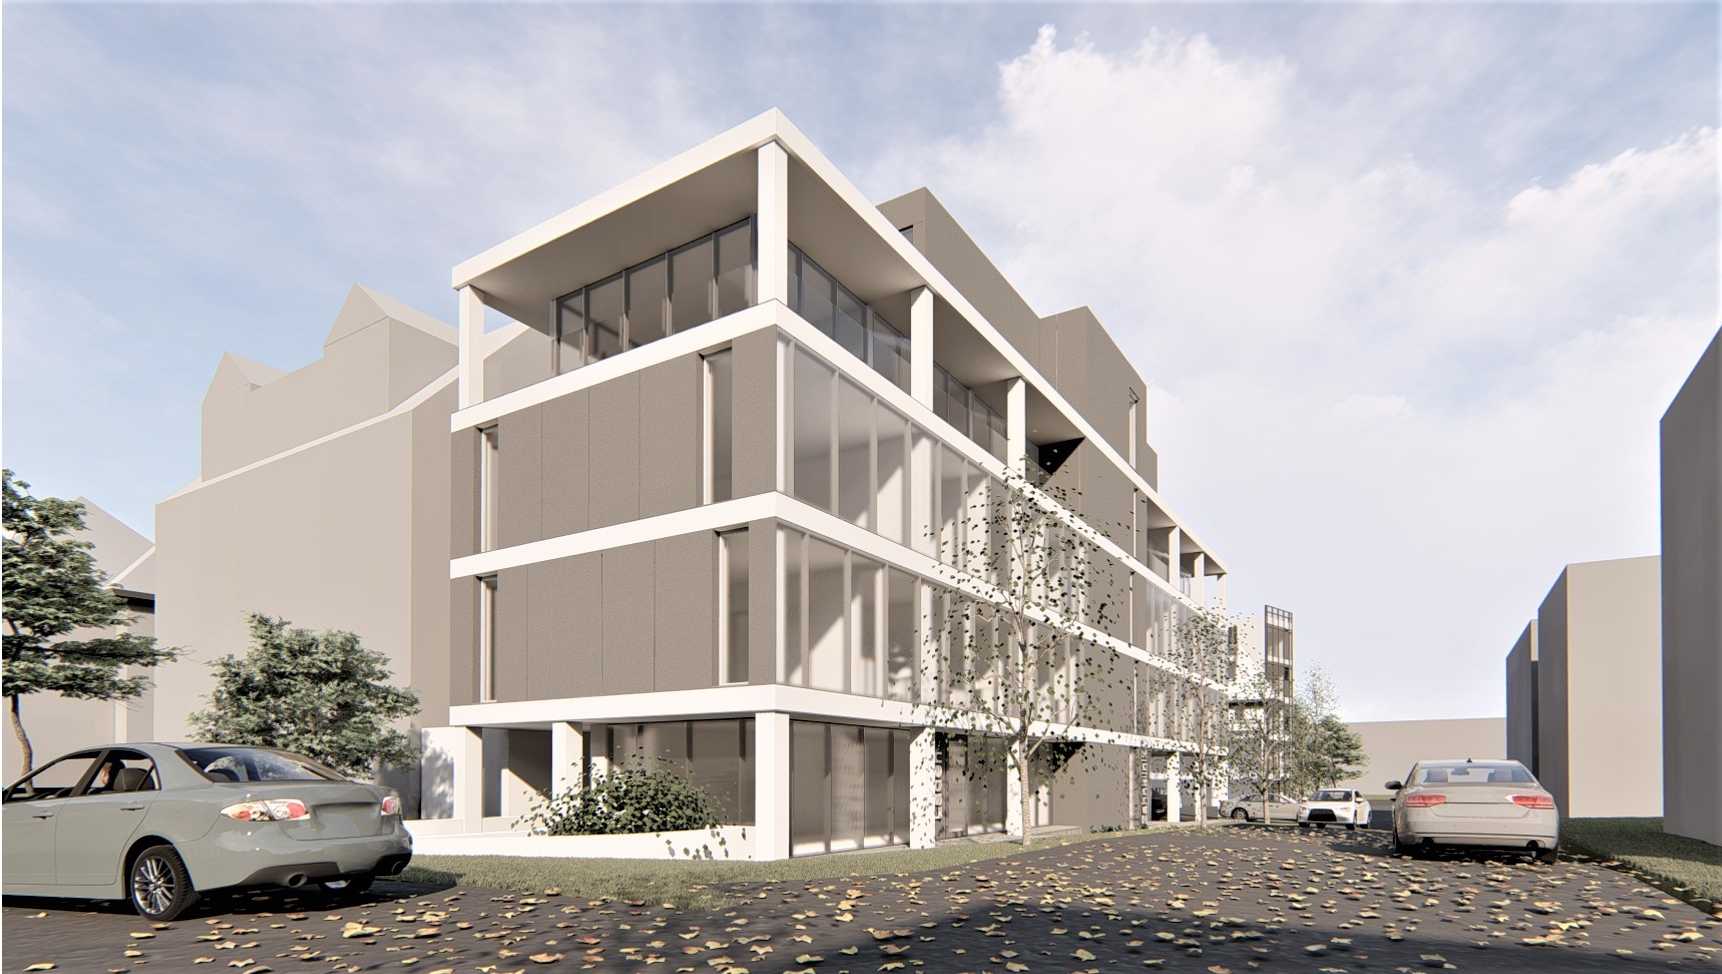 Neubau Büro- und Geschäftsgebäude in Filderstadt - Baufortschritt